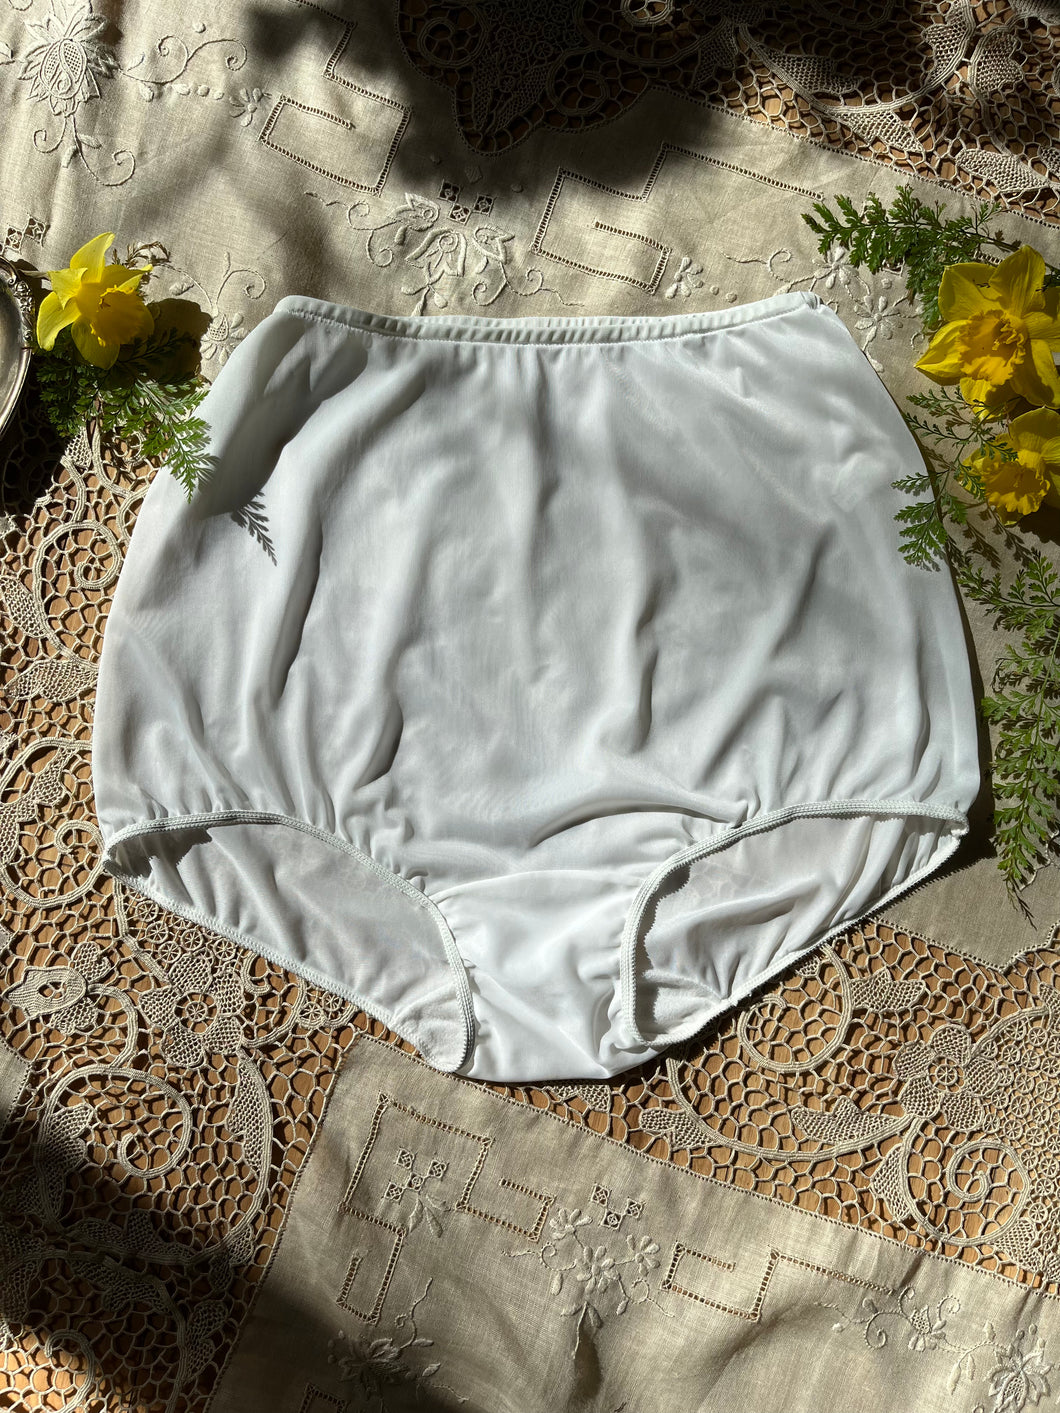 Authentic 1960’s vintage Kayser White Nylon Pillow Tab Granny Panties